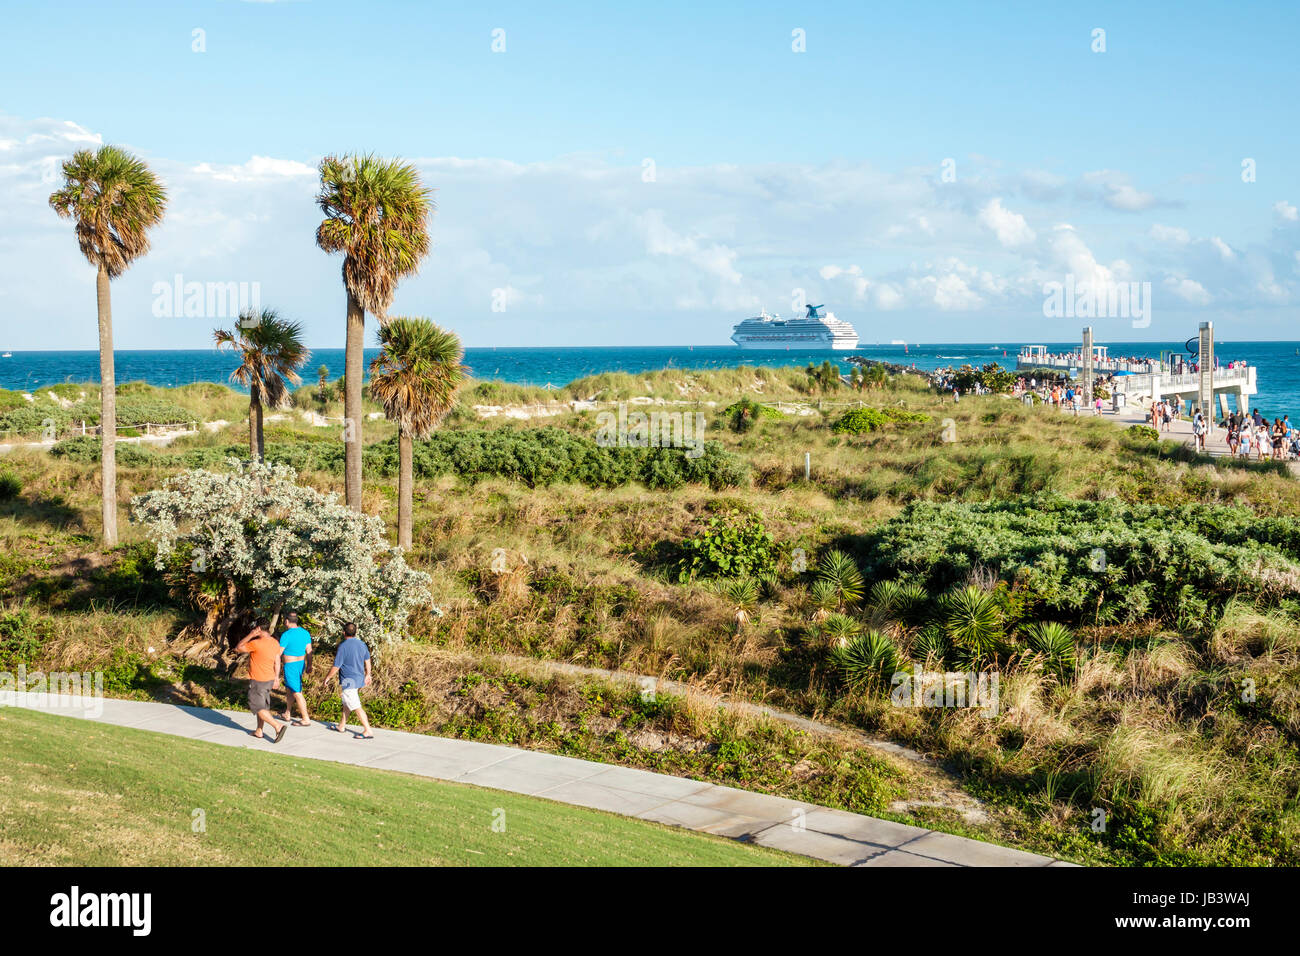 Miami Beach Florida, Océano Atlántico, South Pointe Park, sendero para caminar, dunas nativas, hierba, vegetación, vista al océano, muelle, salida del barco crucero, Puerto,FL170401014 Foto de stock